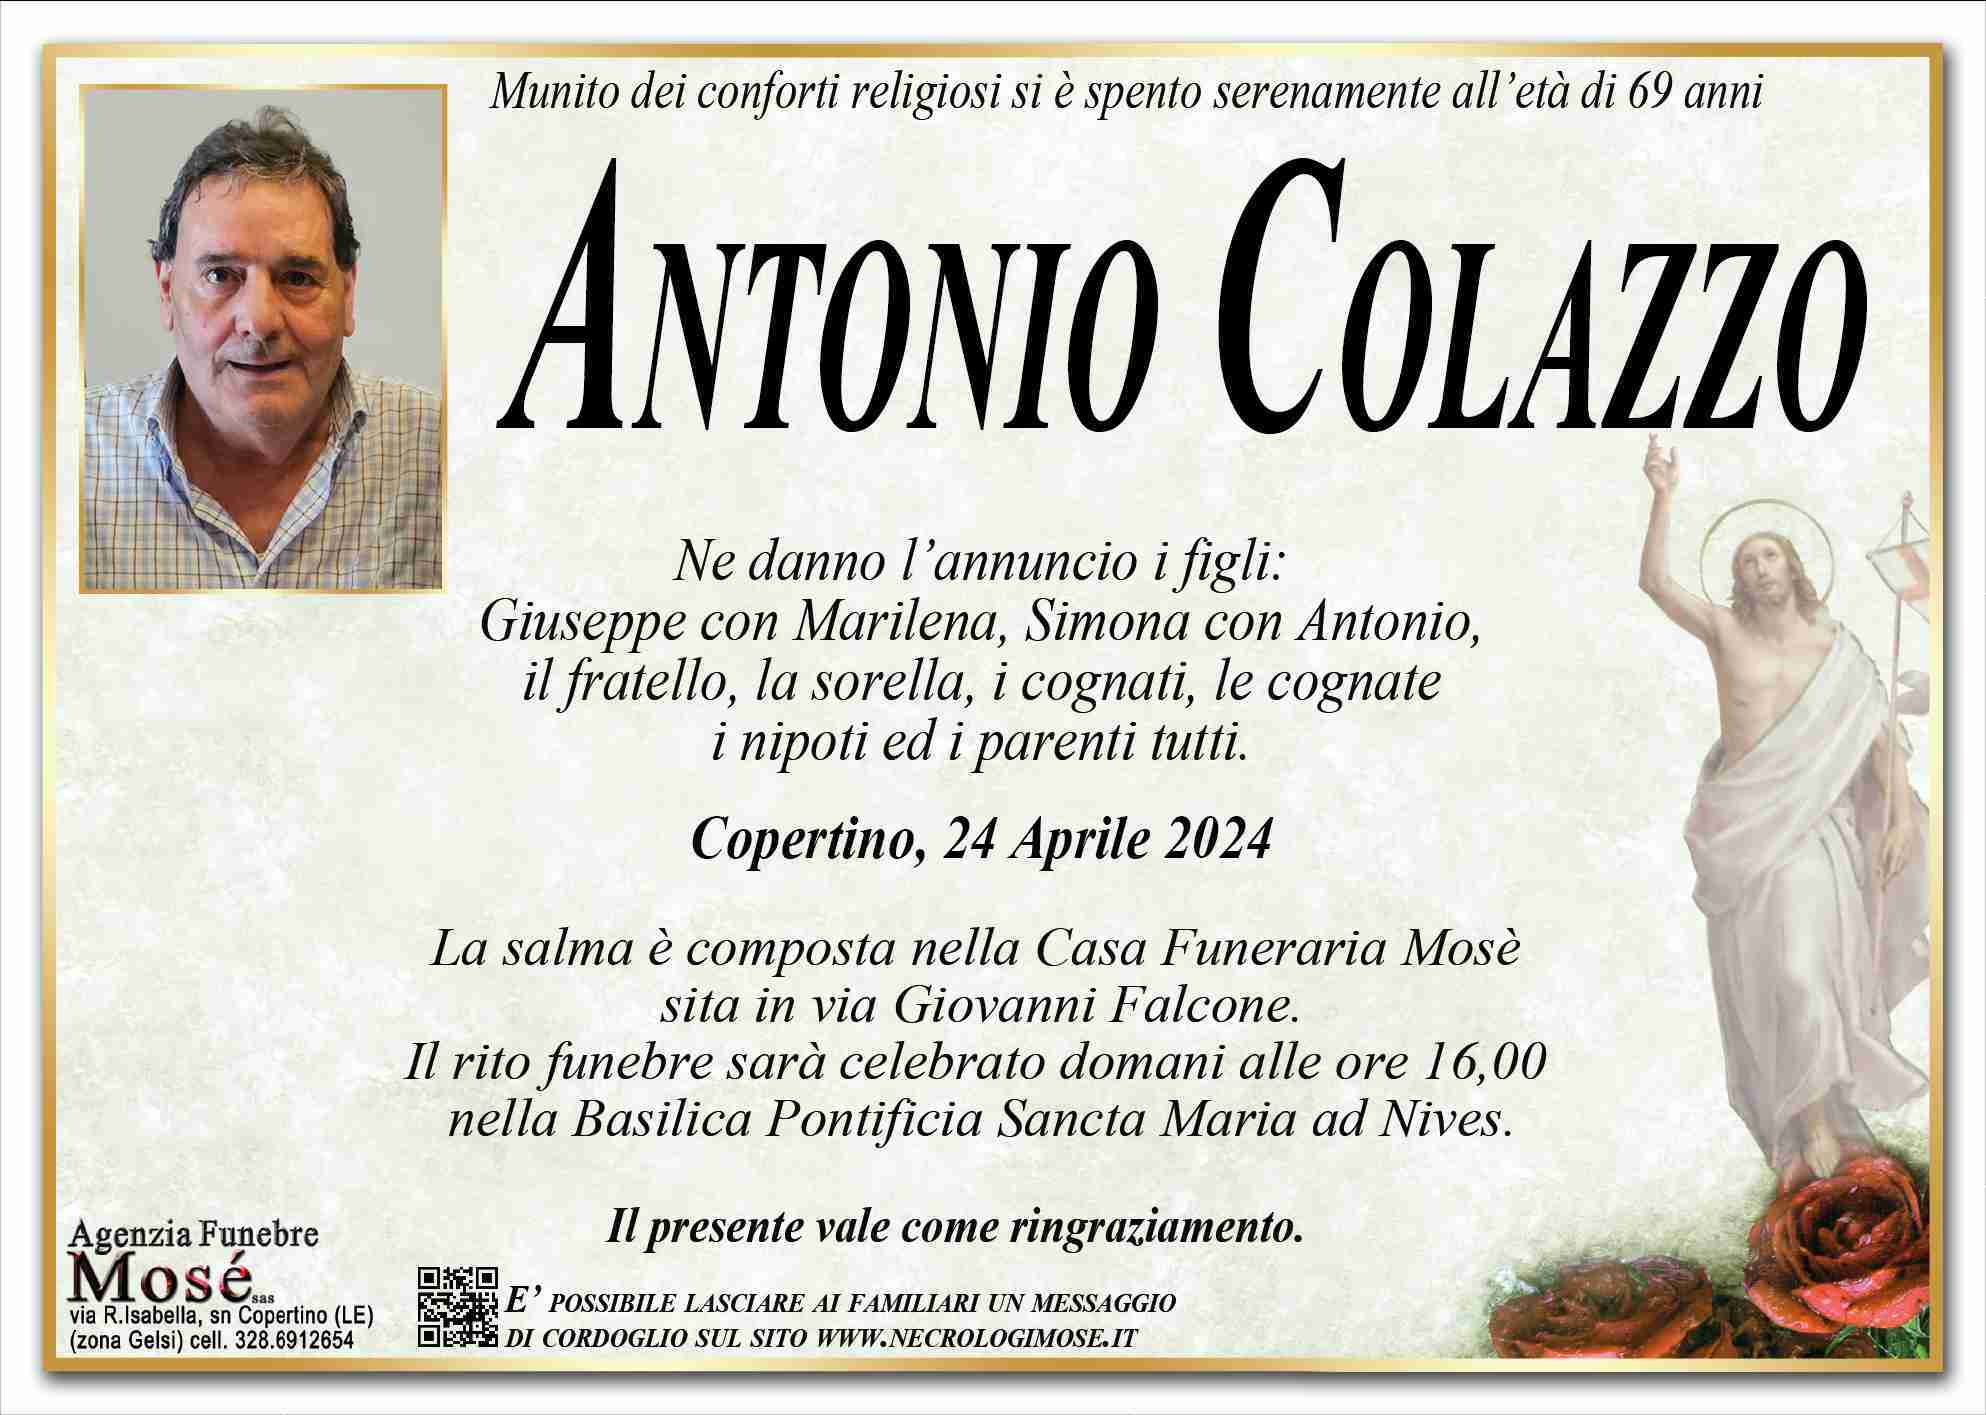 Antonio Colazzo